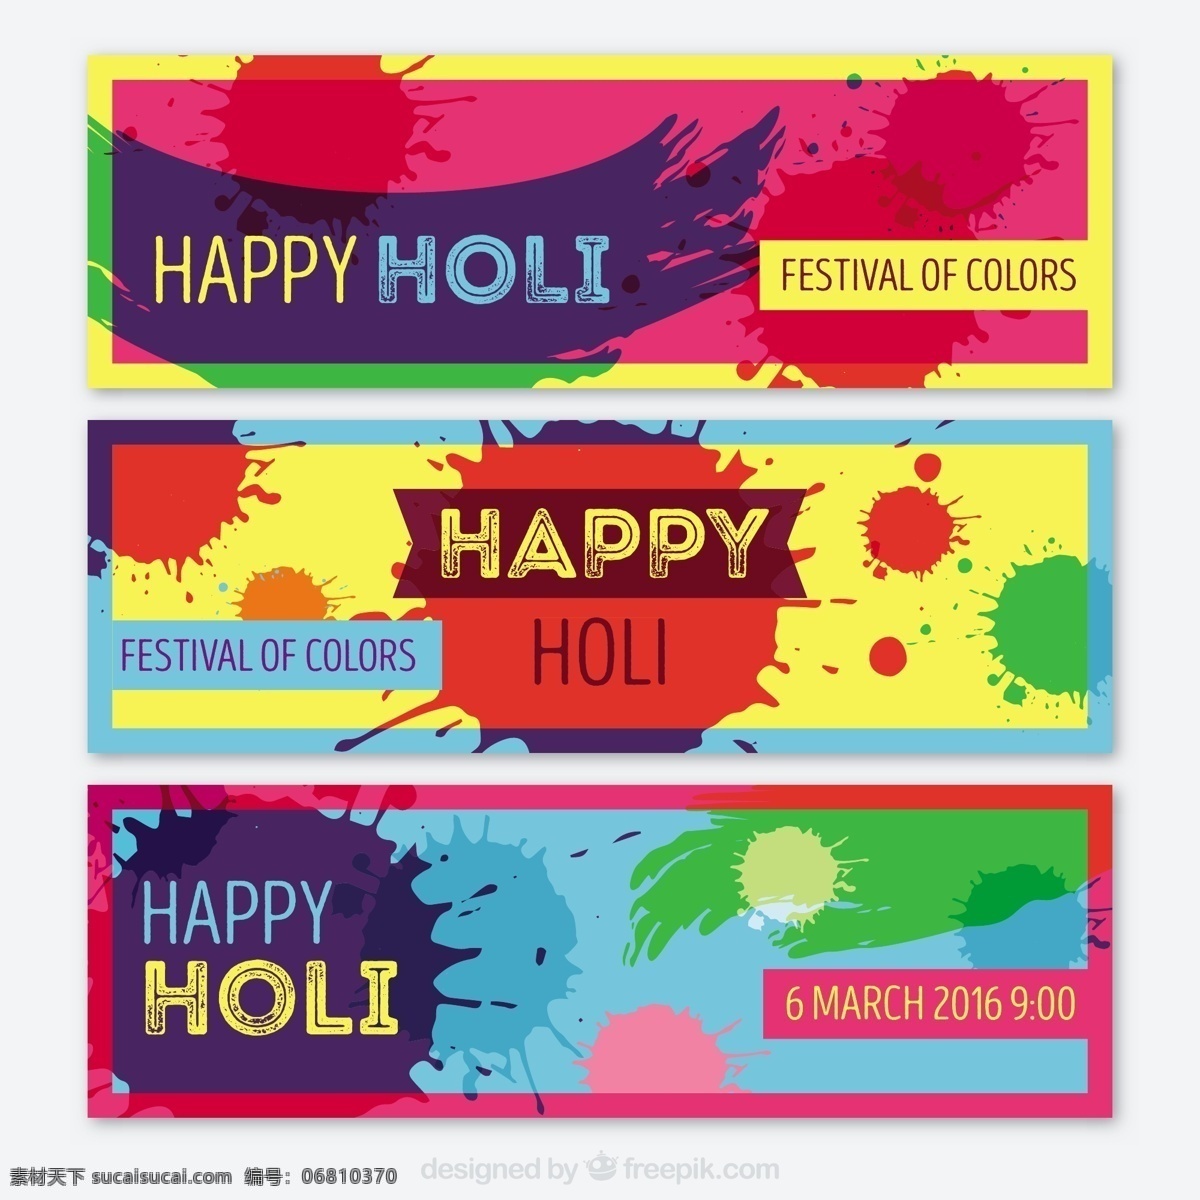 抽象 色彩 节日 旗帜 抽象的爱 色斑 油漆 弹簧 横幅 快乐 印度 庆典 宗教节日 丰富多彩的 乐趣 胡里节 颜色飞溅 文化 白色